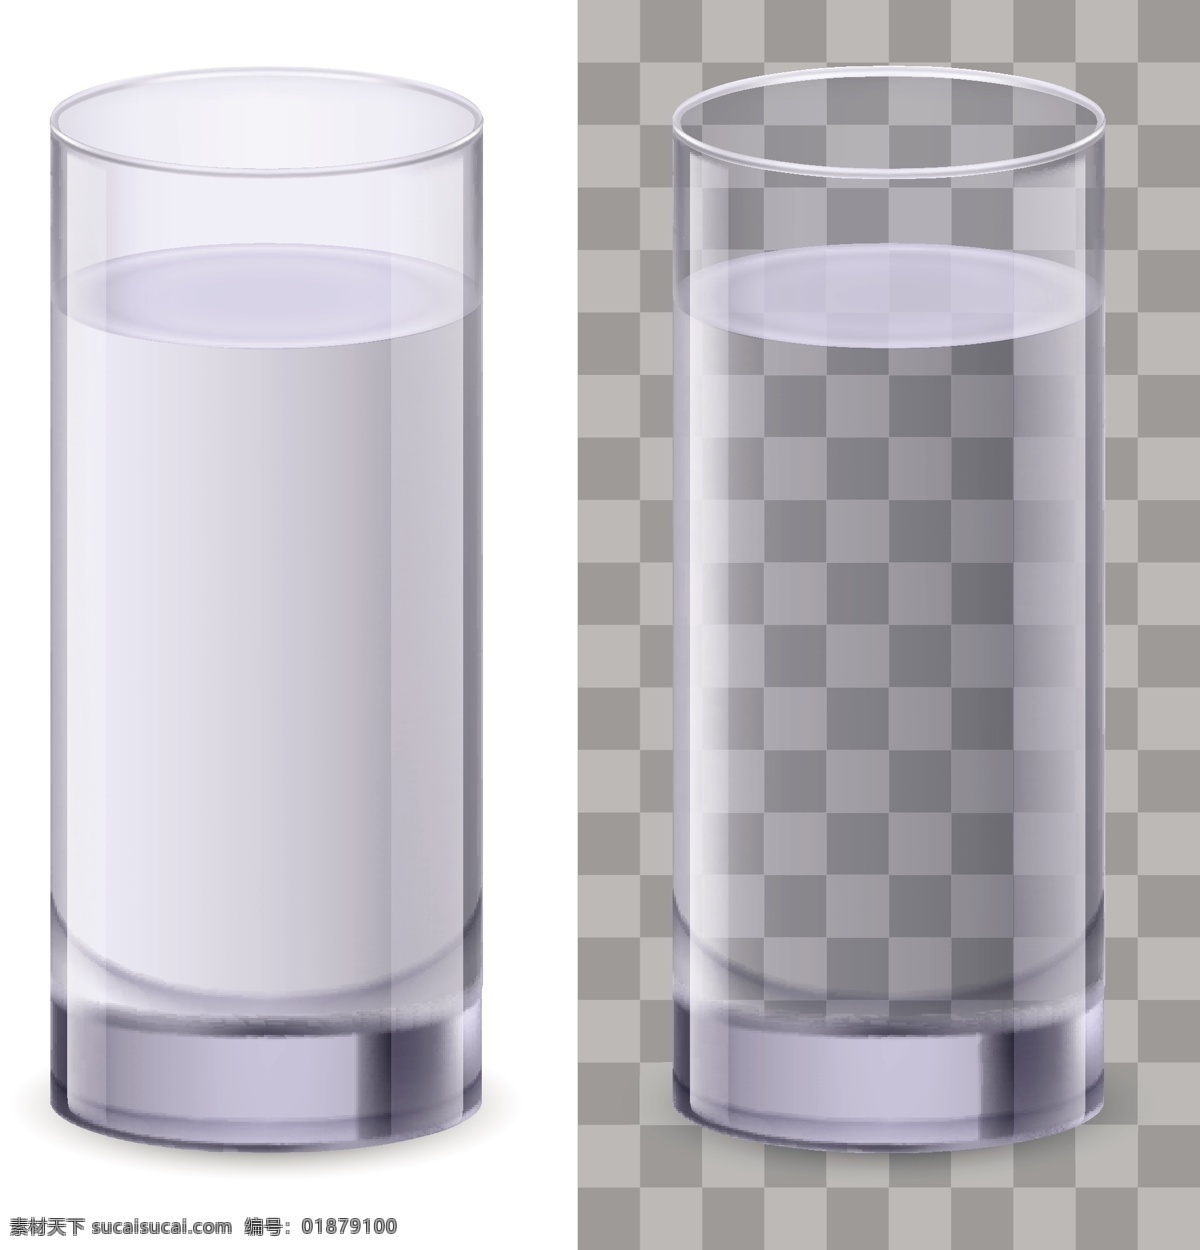 玻璃水杯 水杯 一杯水 玻璃杯 手绘 透明 矢量 生活用品主题 生活用品 生活百科